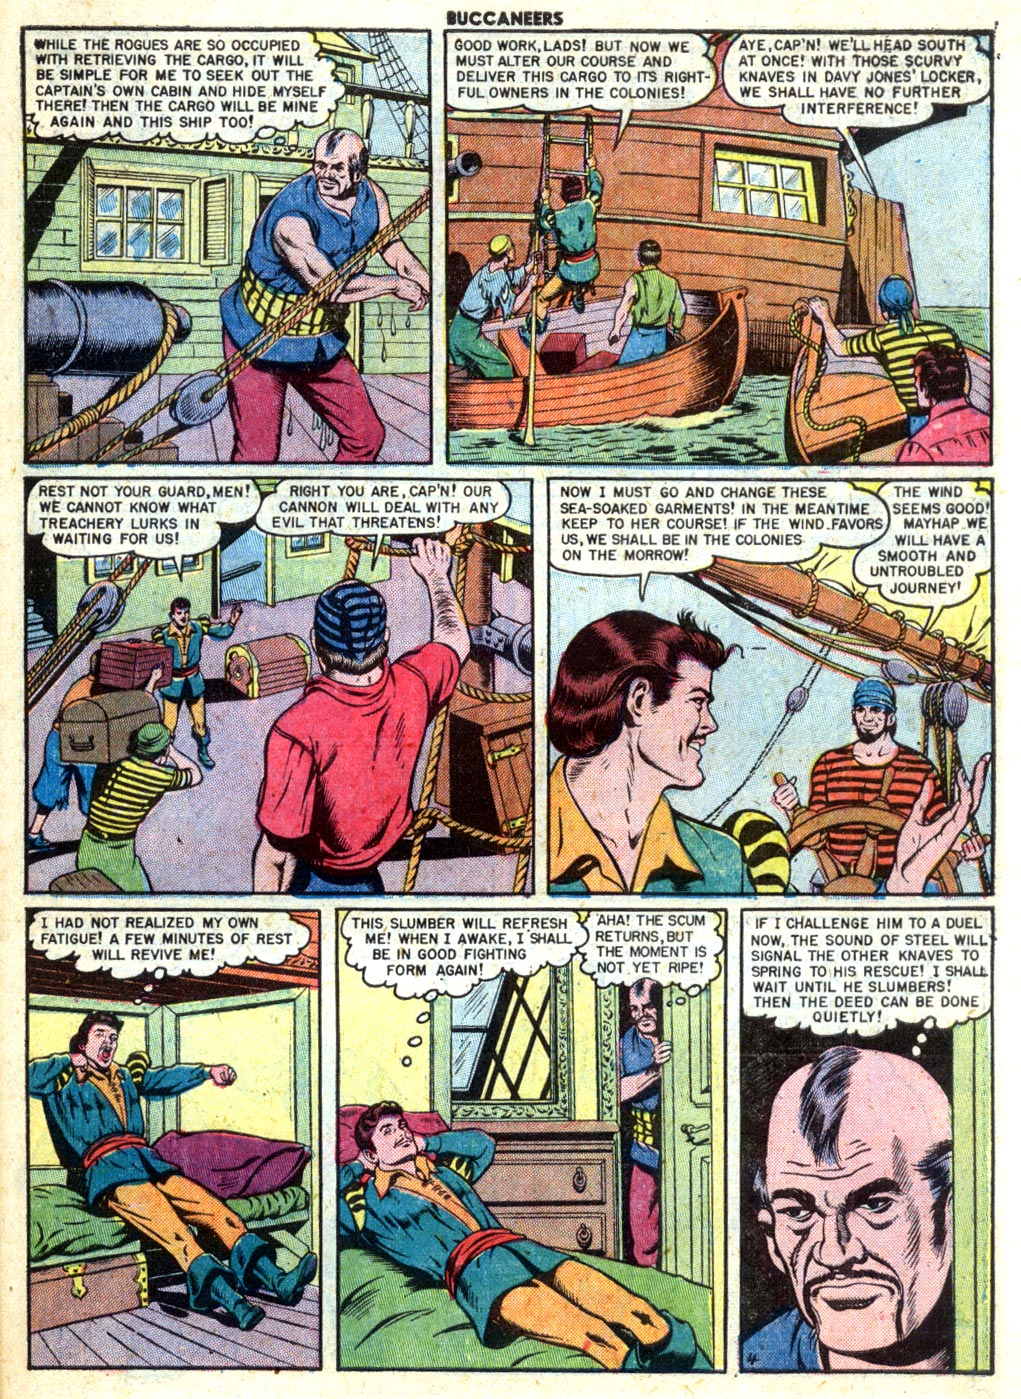 Read online Buccaneers comic -  Issue #27 - 39